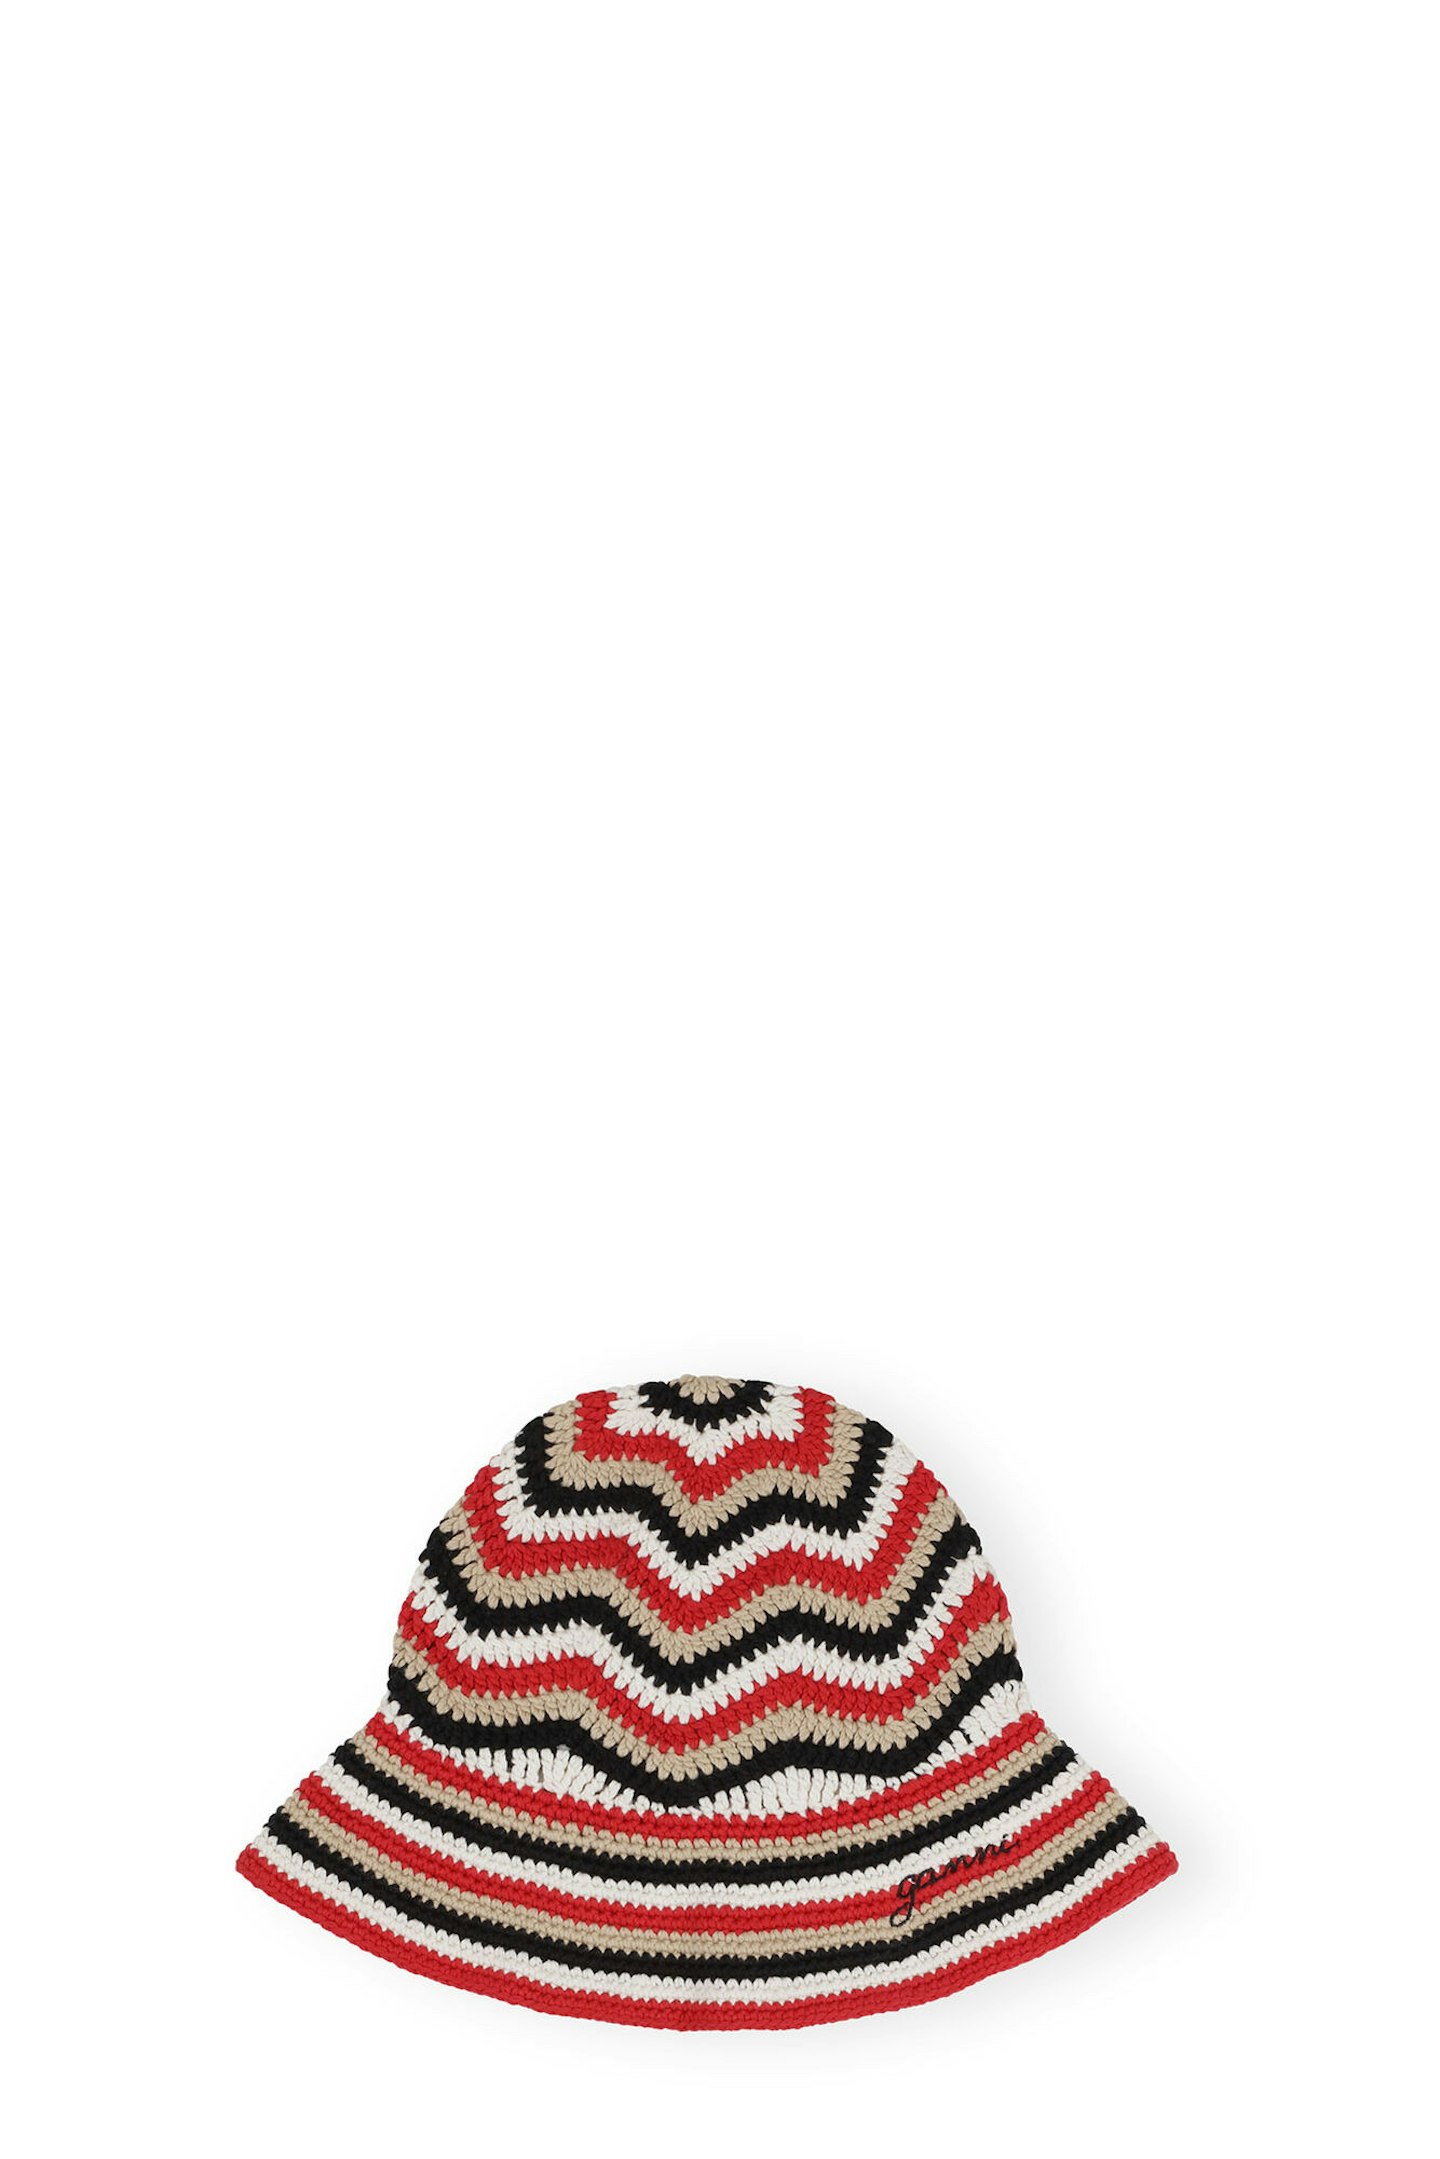 Ganni, Red Cotton Crochet Bucket Hat